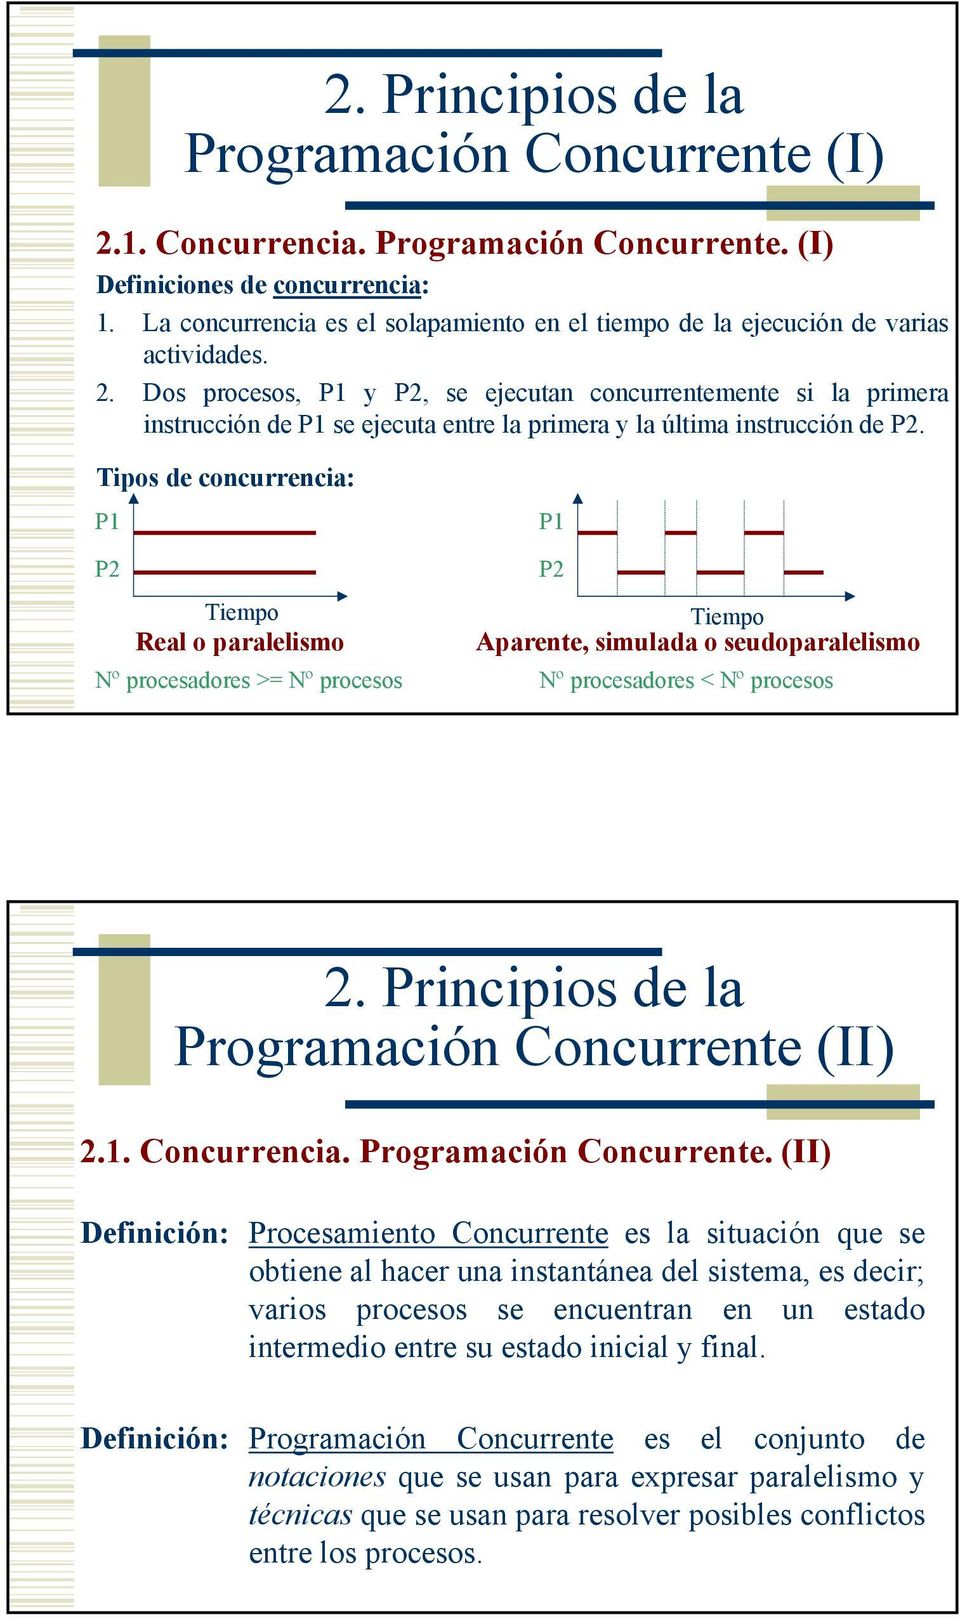 Dos procesos, P1 y P2, se ejecutan concurrentemente si la primera instrucción de P1 se ejecuta entre la primera y la última instrucción de P2.